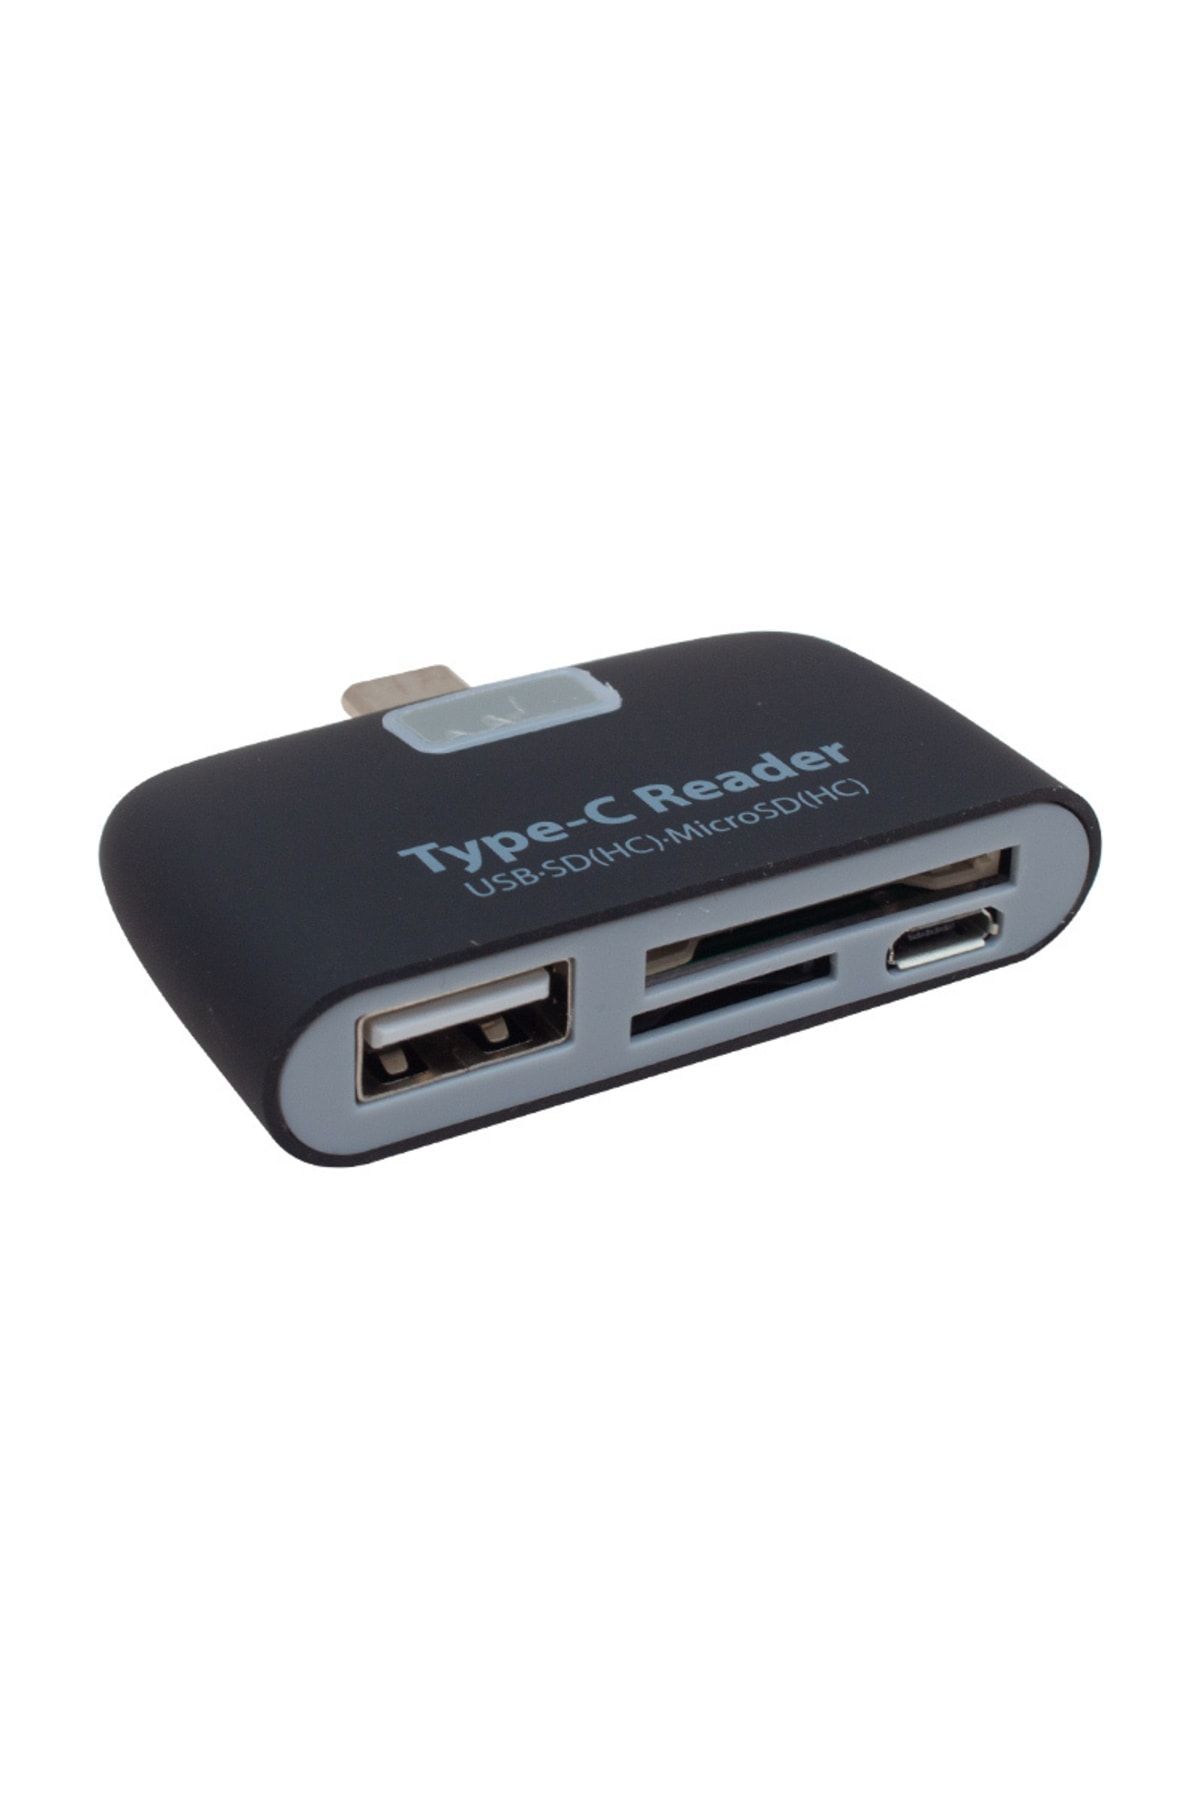 Powermaster DEXTER POWERMASTER PM-1644 USB TYPE-C 3.1 SD+TF KART OKUYUCU KİT